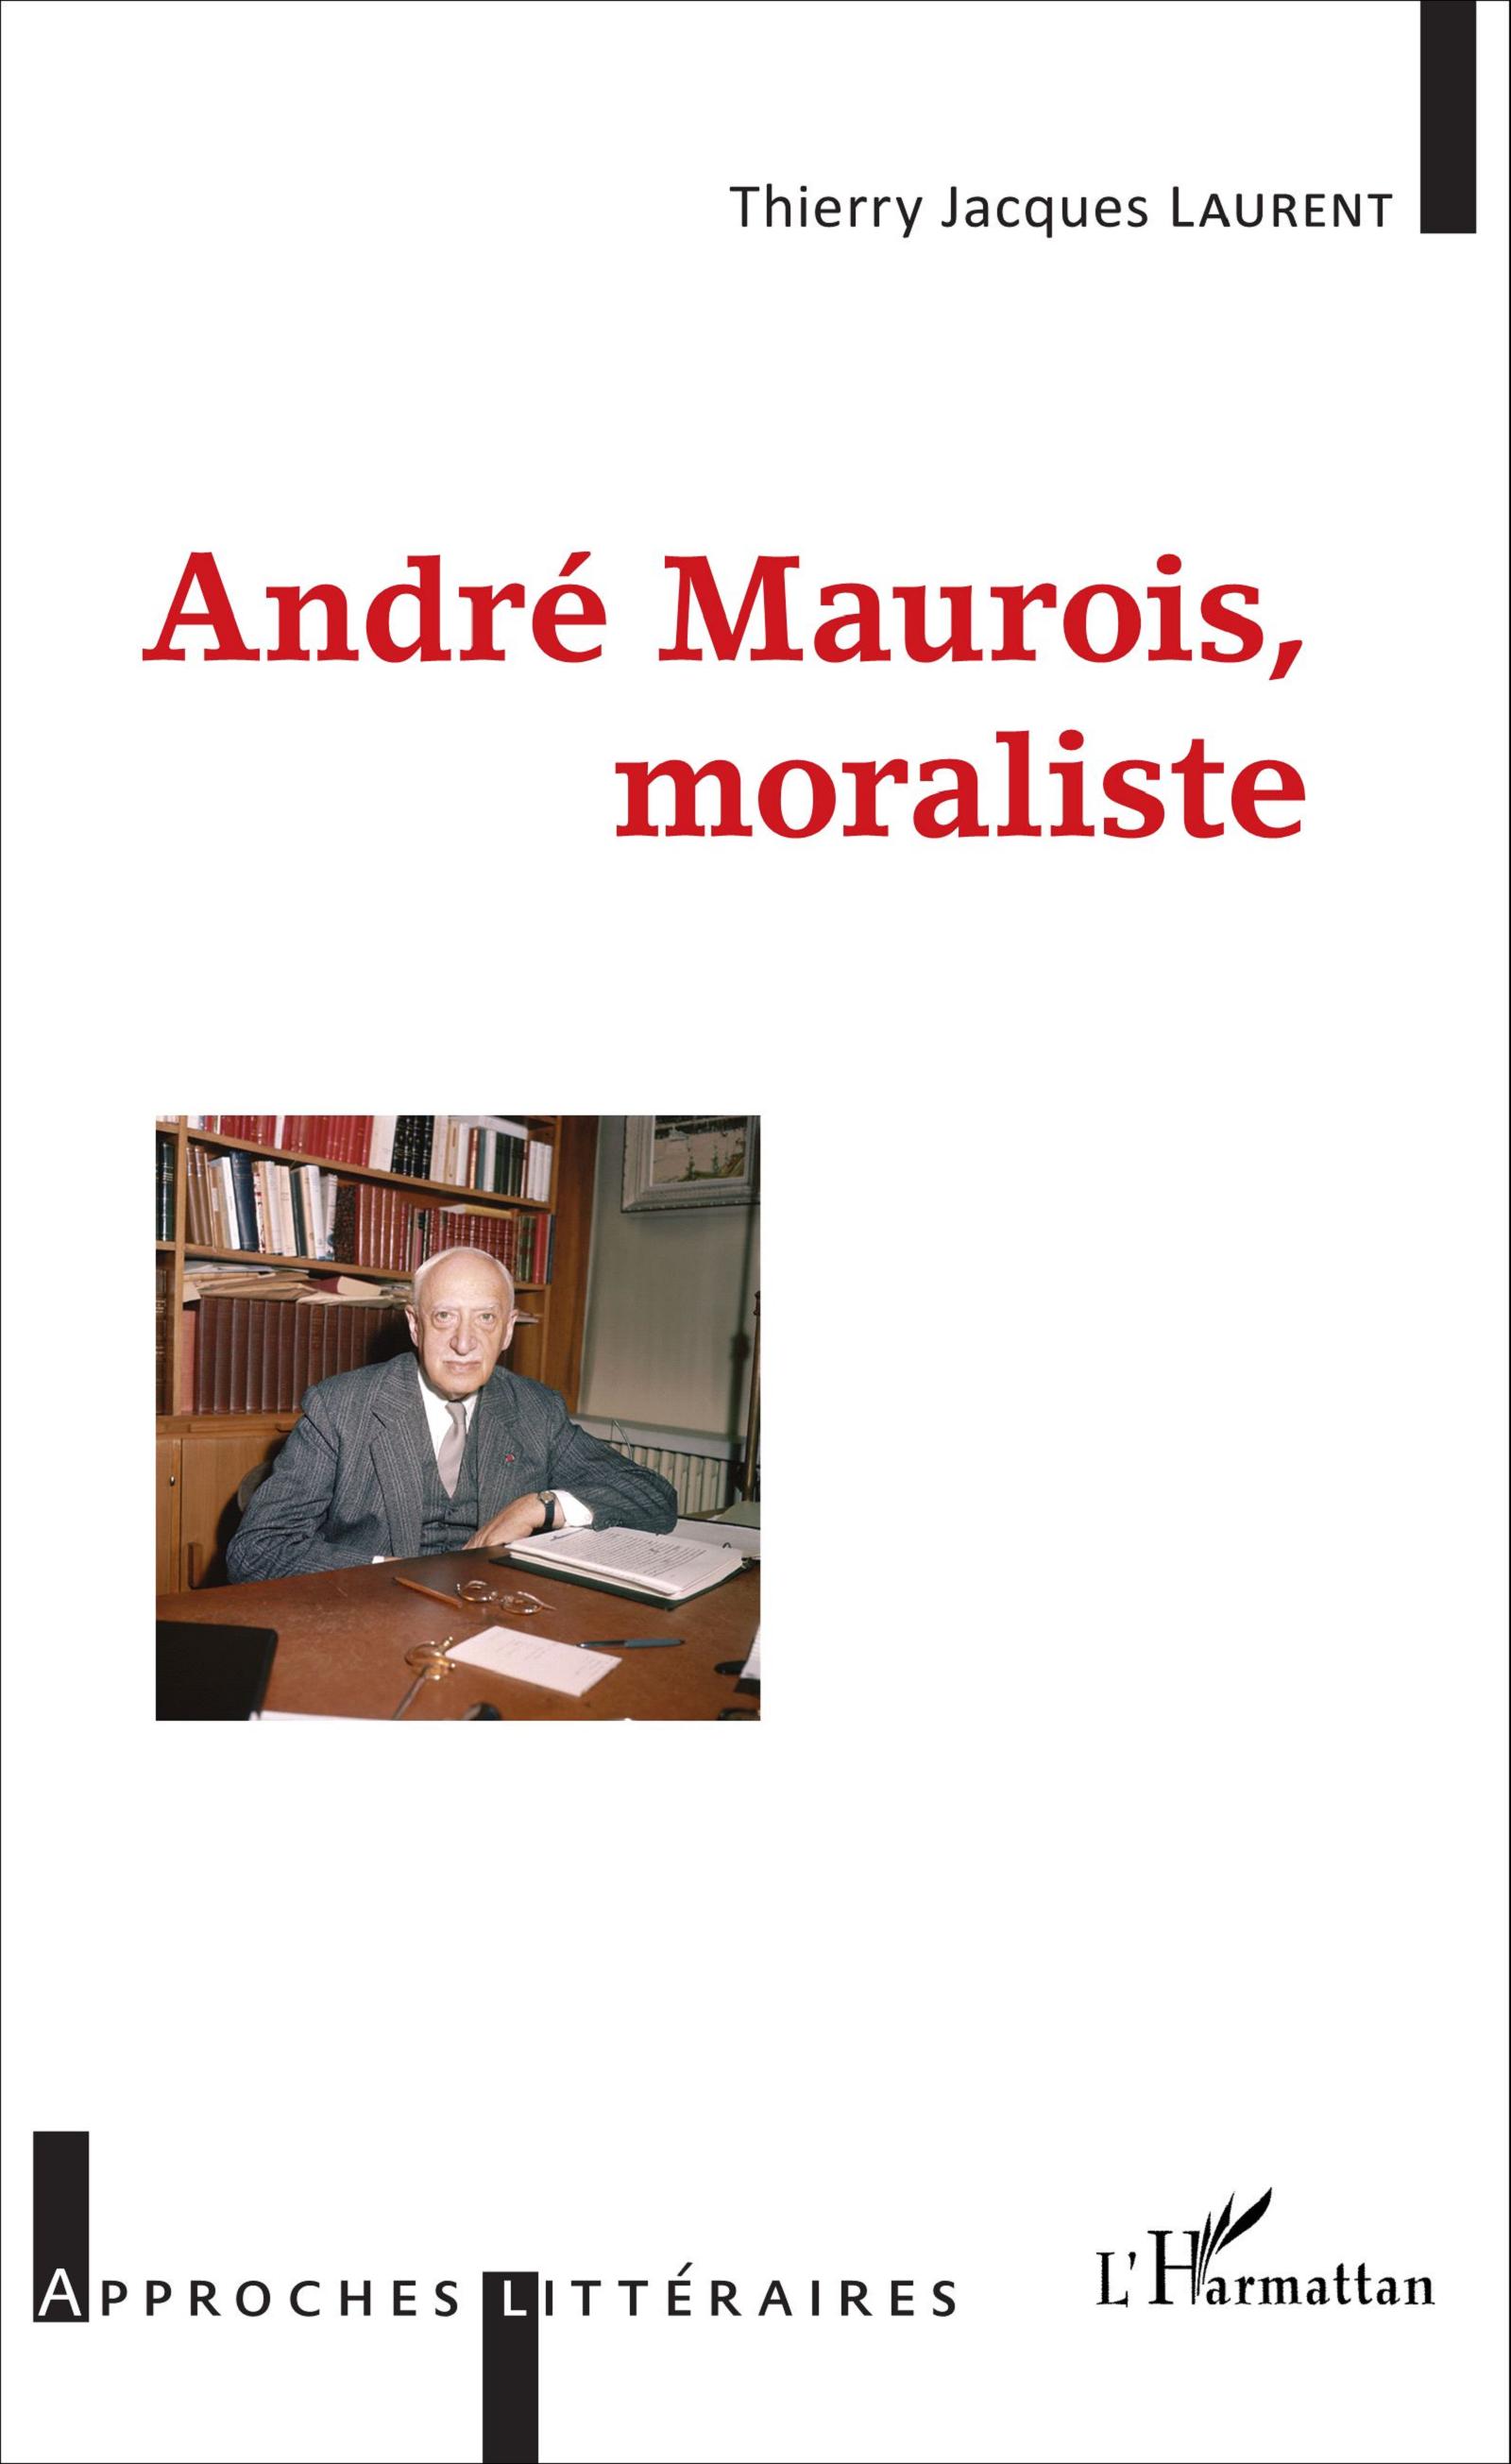 Th. J. Laurent, André Maurois, moraliste